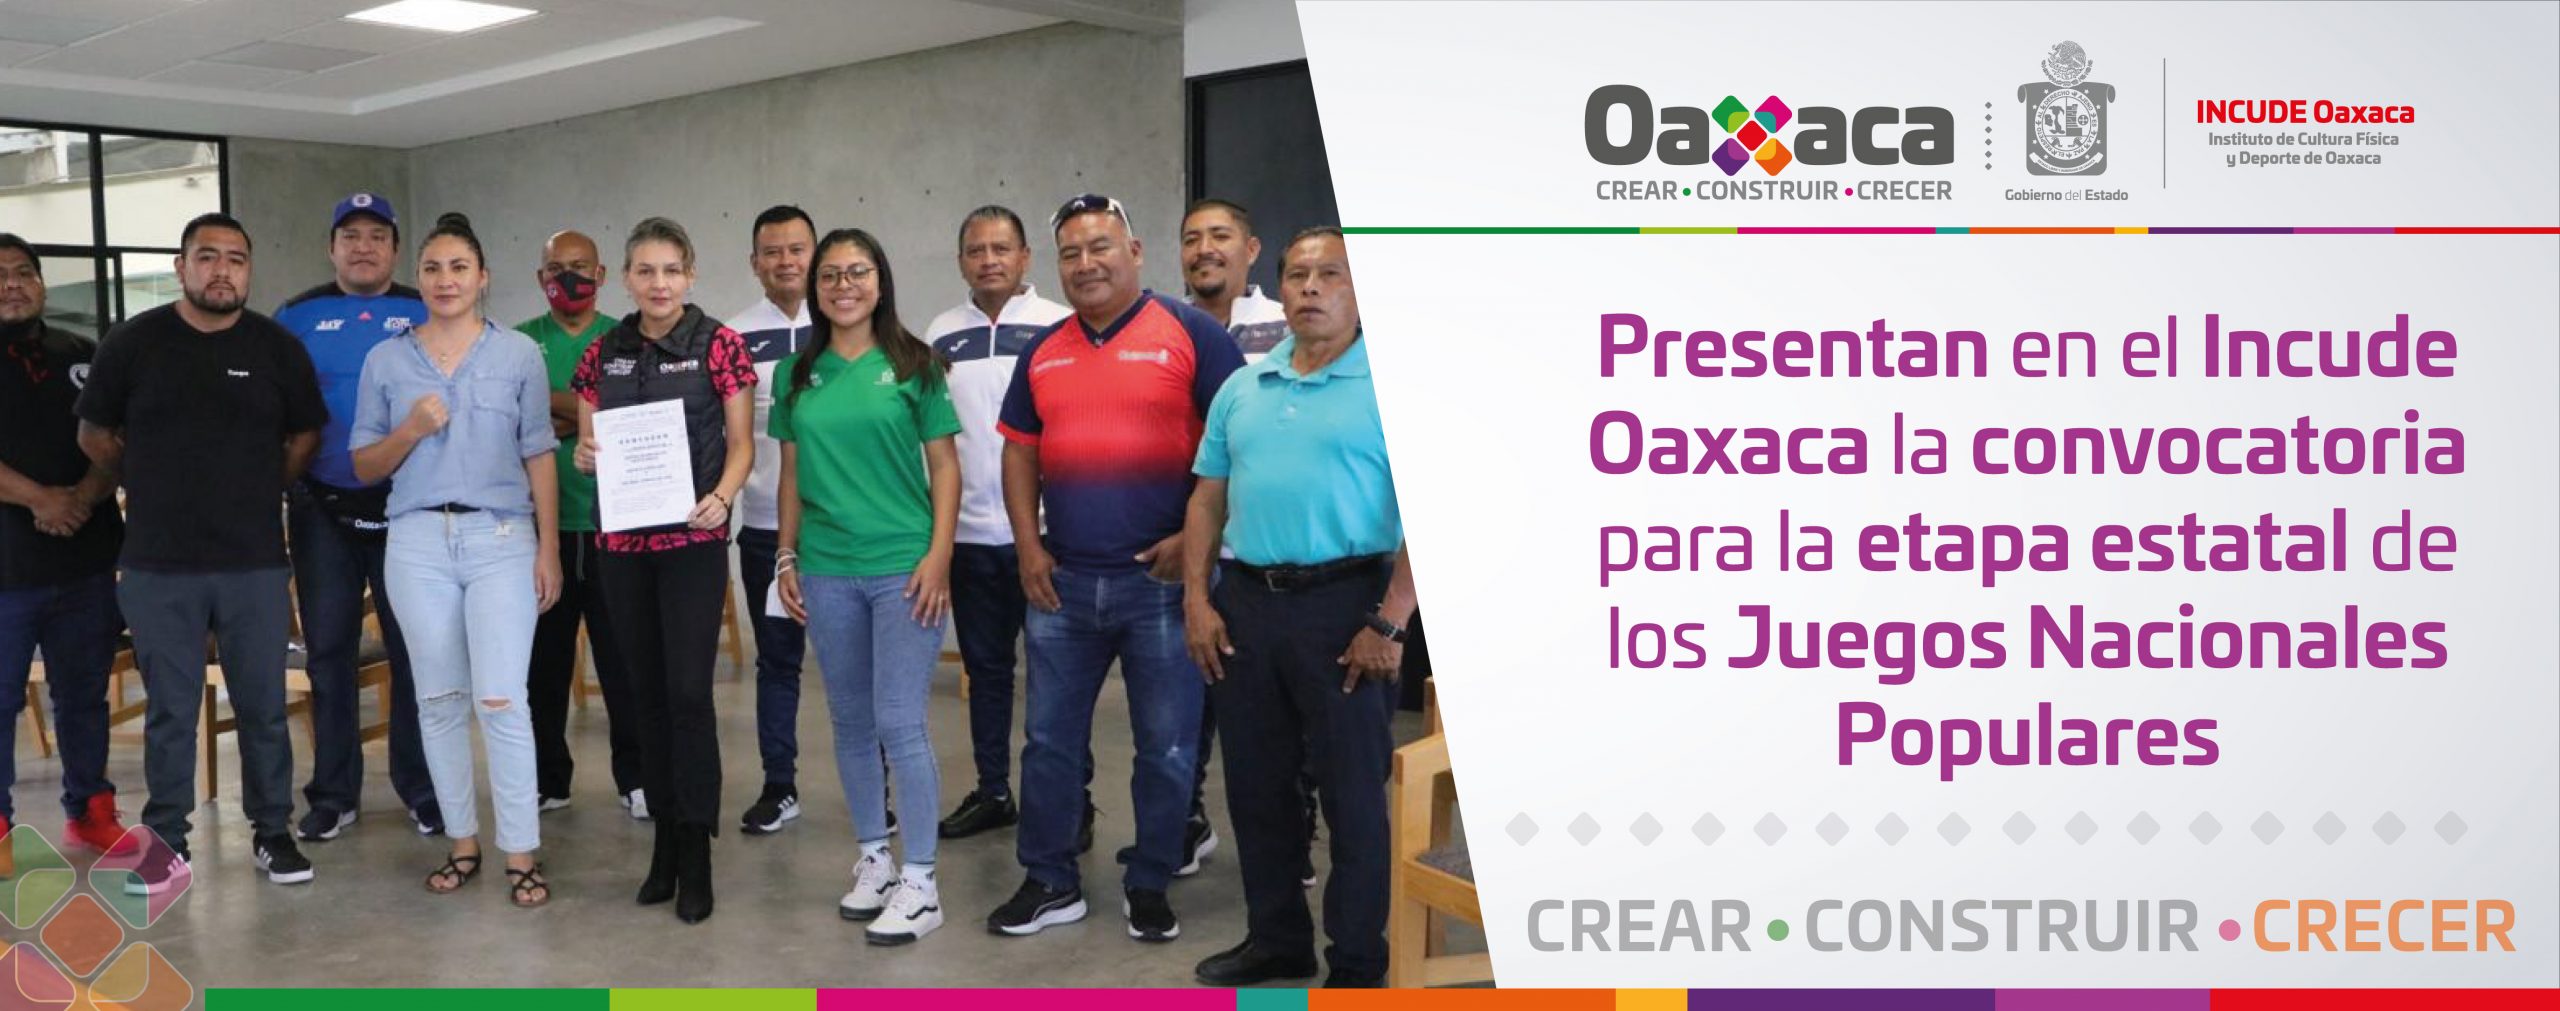 Presentan en el Incude Oaxaca la convocatoria para la etapa estatal de los Juegos Nacionales Populares